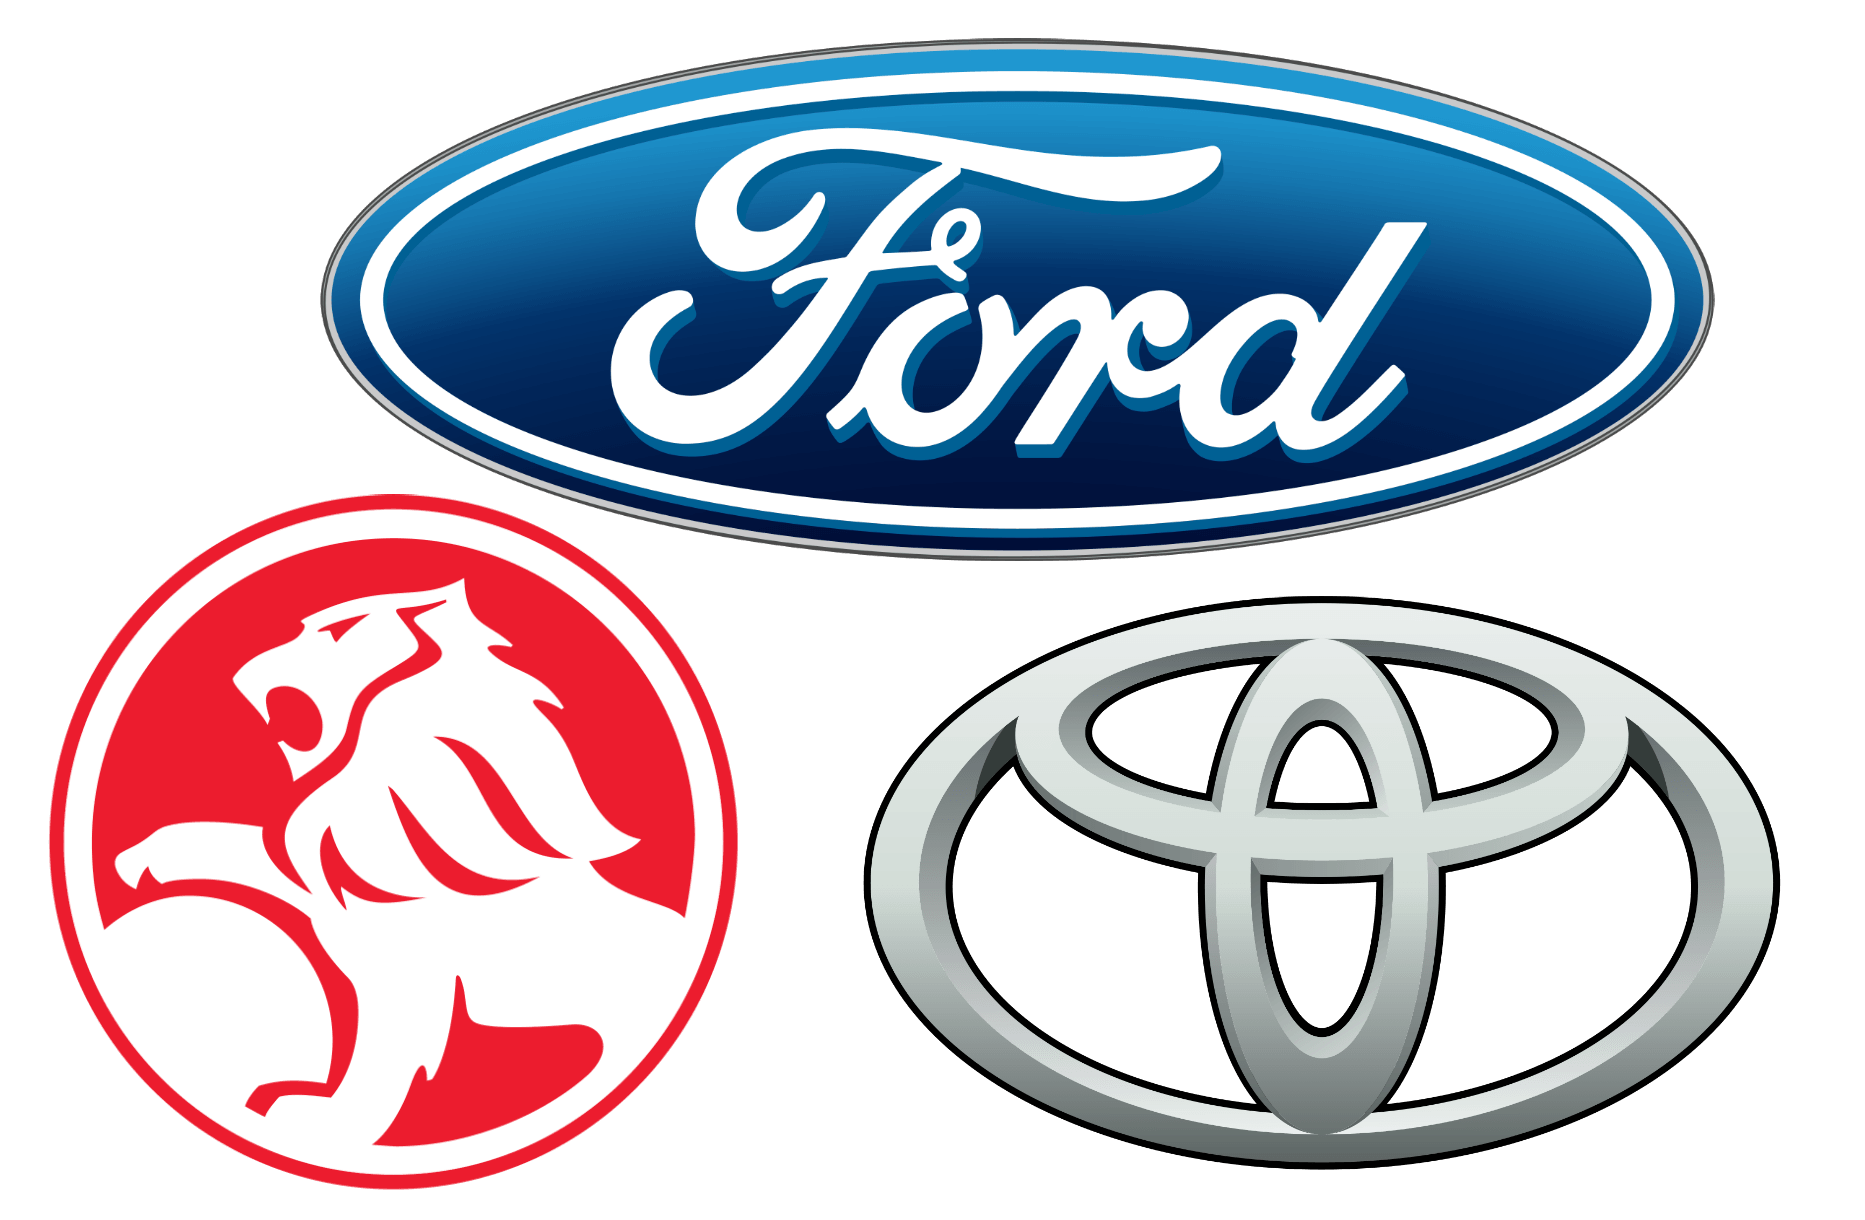 Australian Company Logo - Australian Car Brands, Companies and Manufacturers | Car Brand Names.com